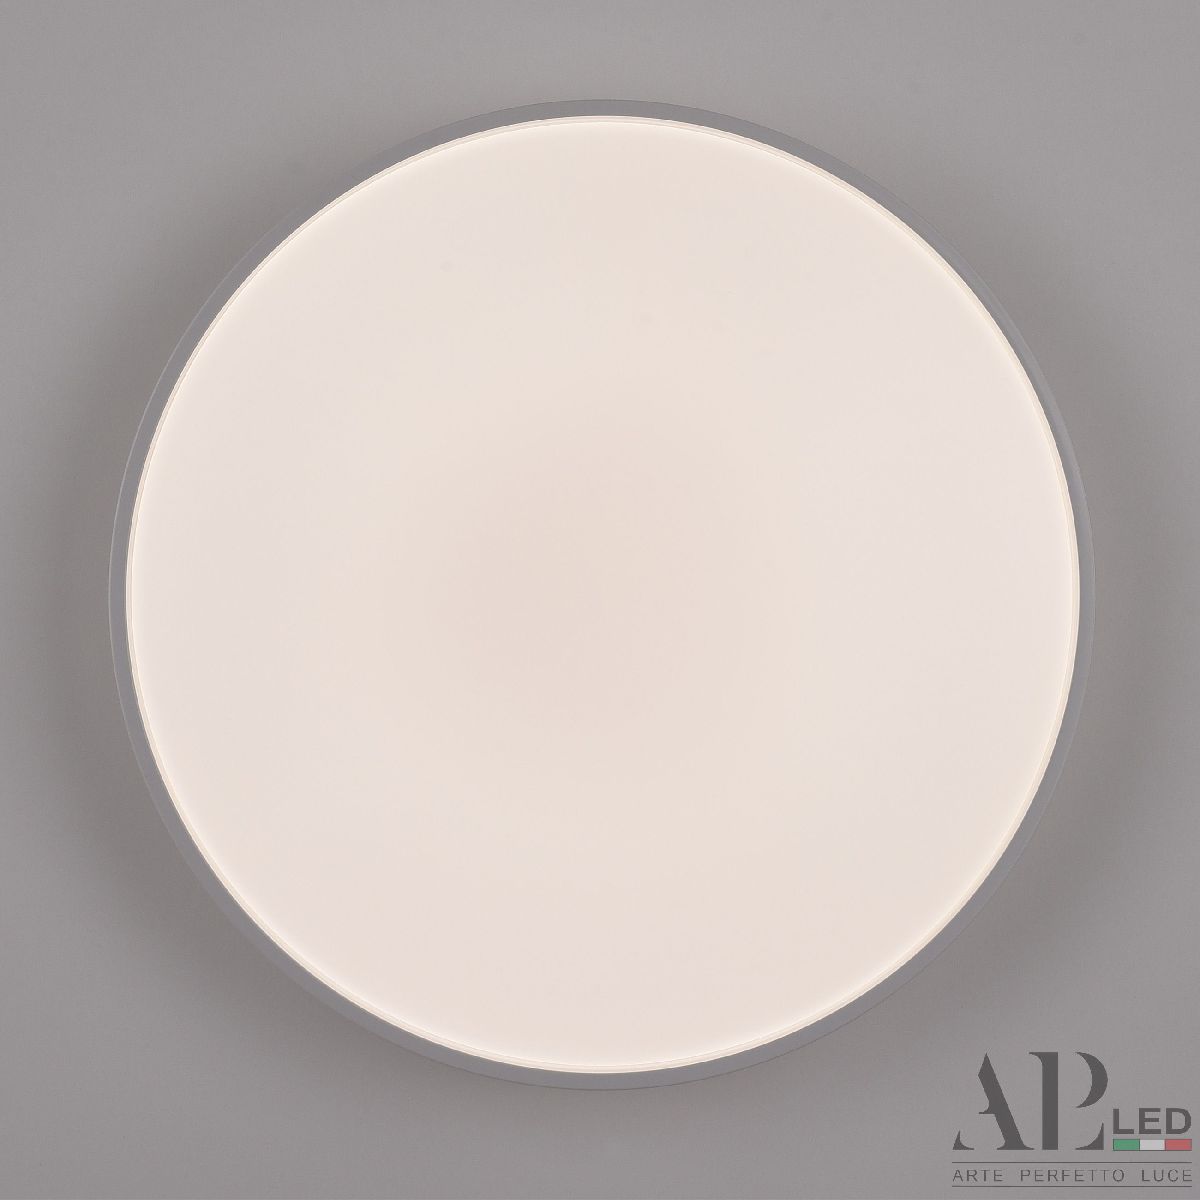 Потолочный светильник Arte Perfetto Luce Toscana PRO 3315.XM302-2-374/24W White TD